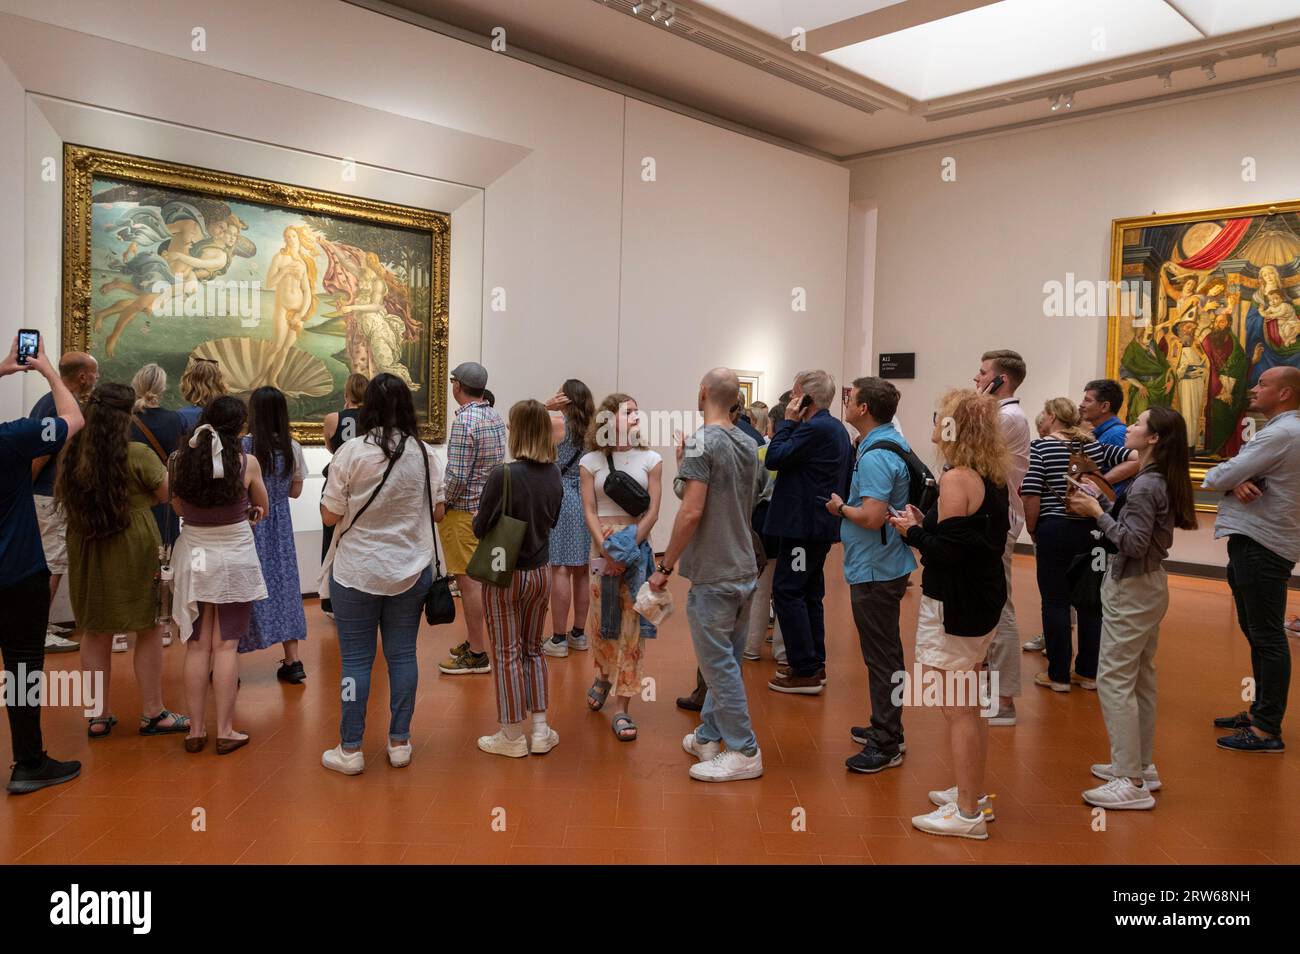 L'une des attractions artistiques les plus importantes de la galerie d'art des Offices est la naissance de Vénus, montrant la déesse, Vénus, debout sur une coquille Saint-Jacques géante. Le Banque D'Images